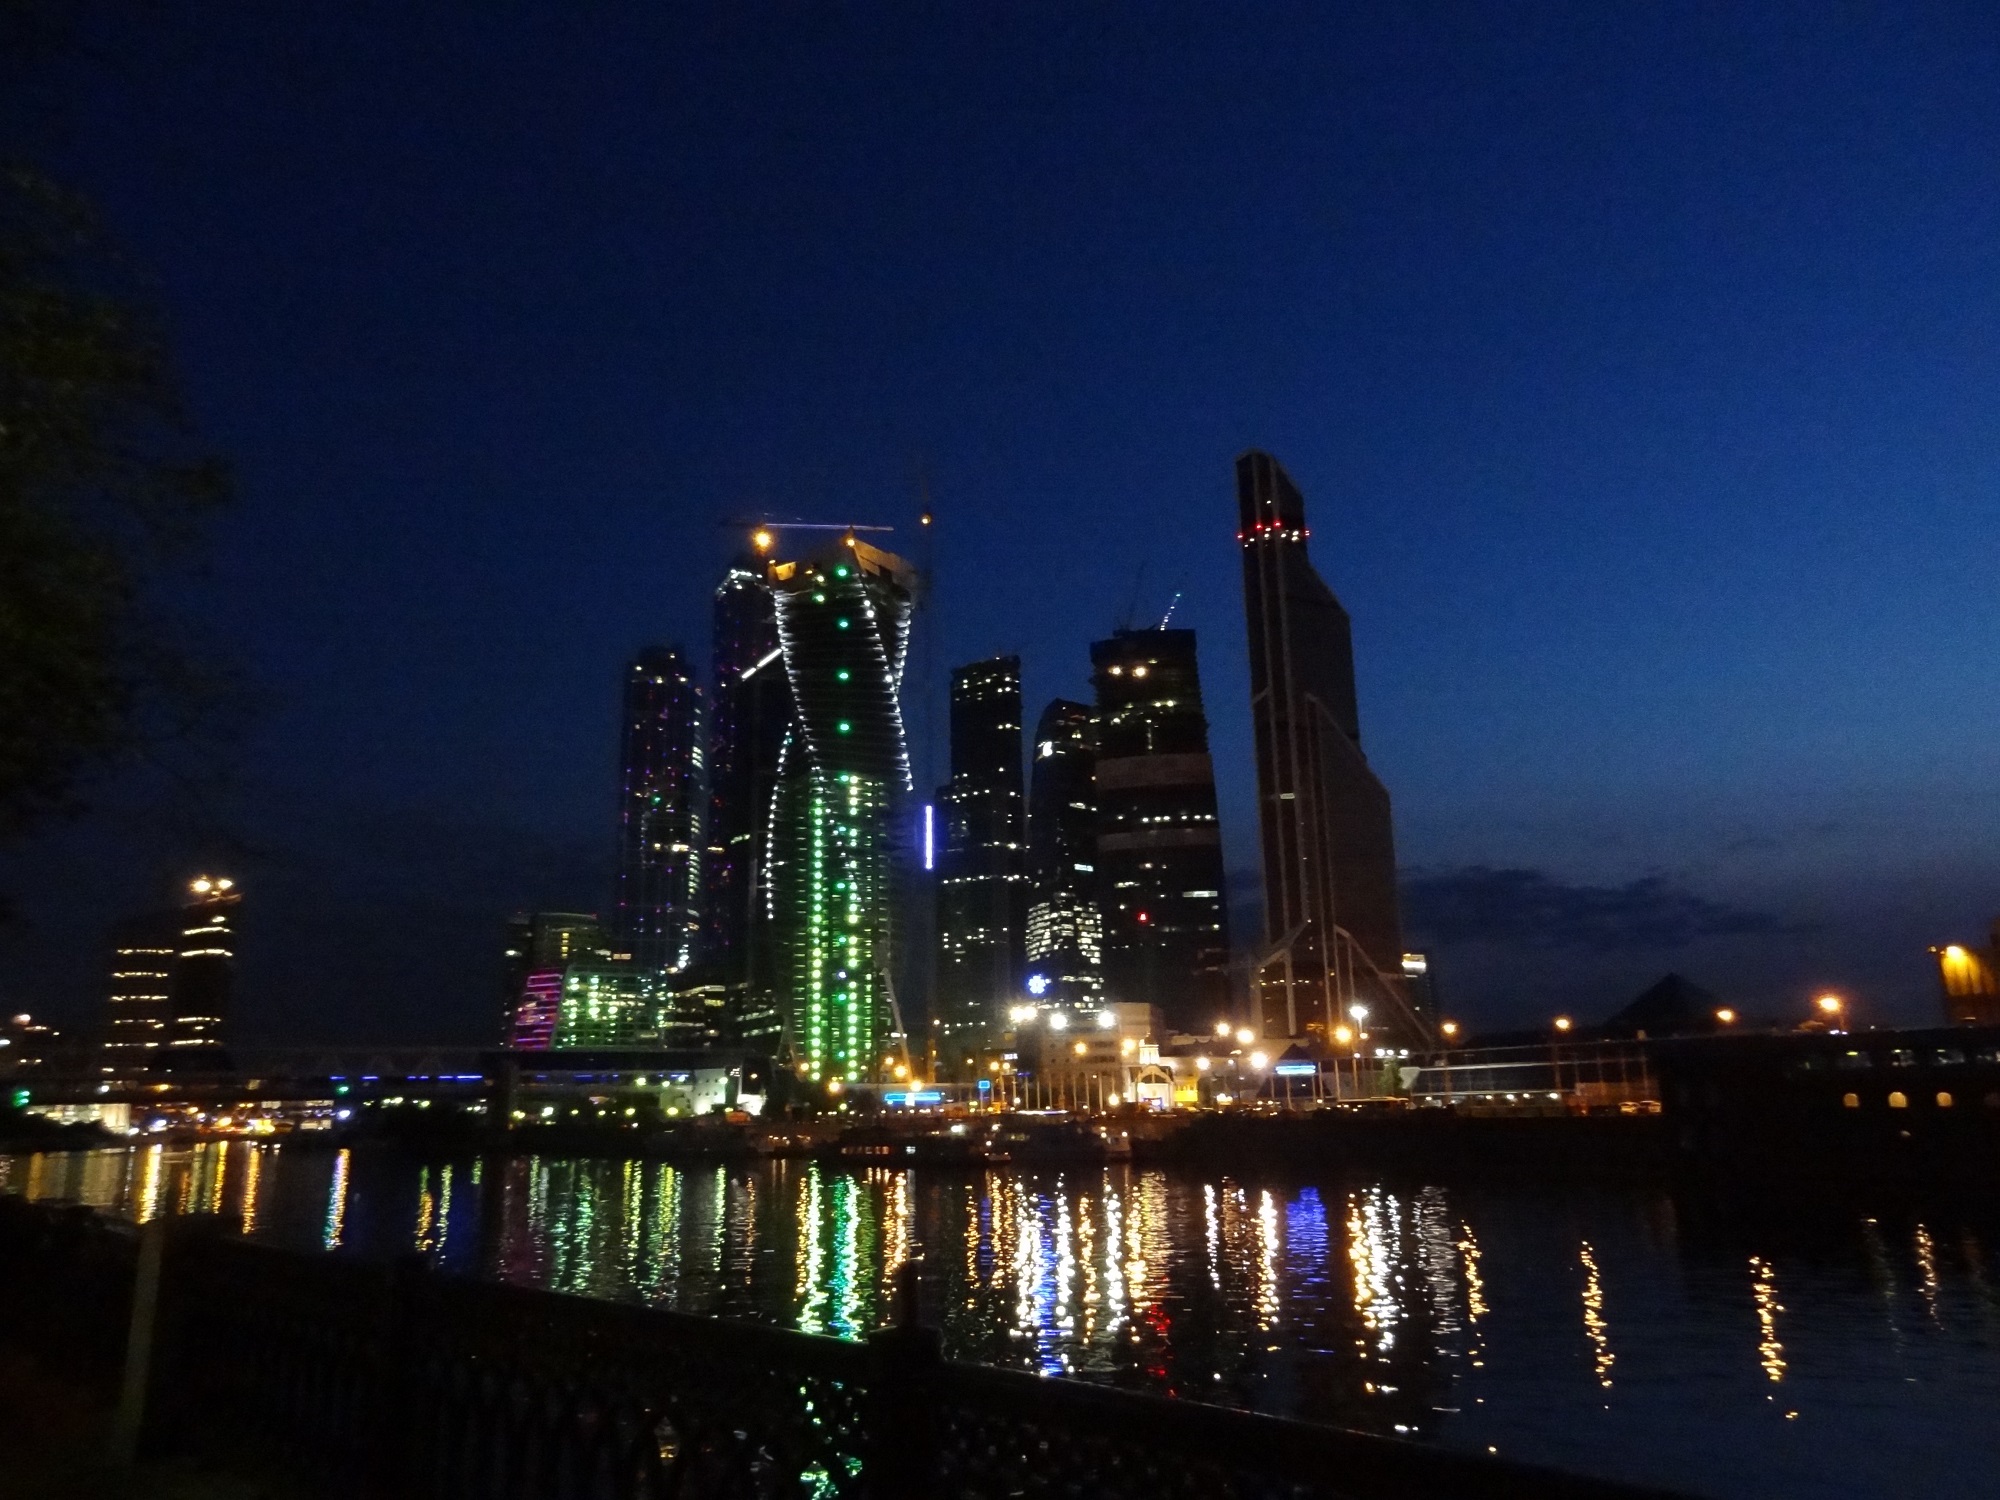 Фото Москва Сити Ночью В Хорошем Качестве